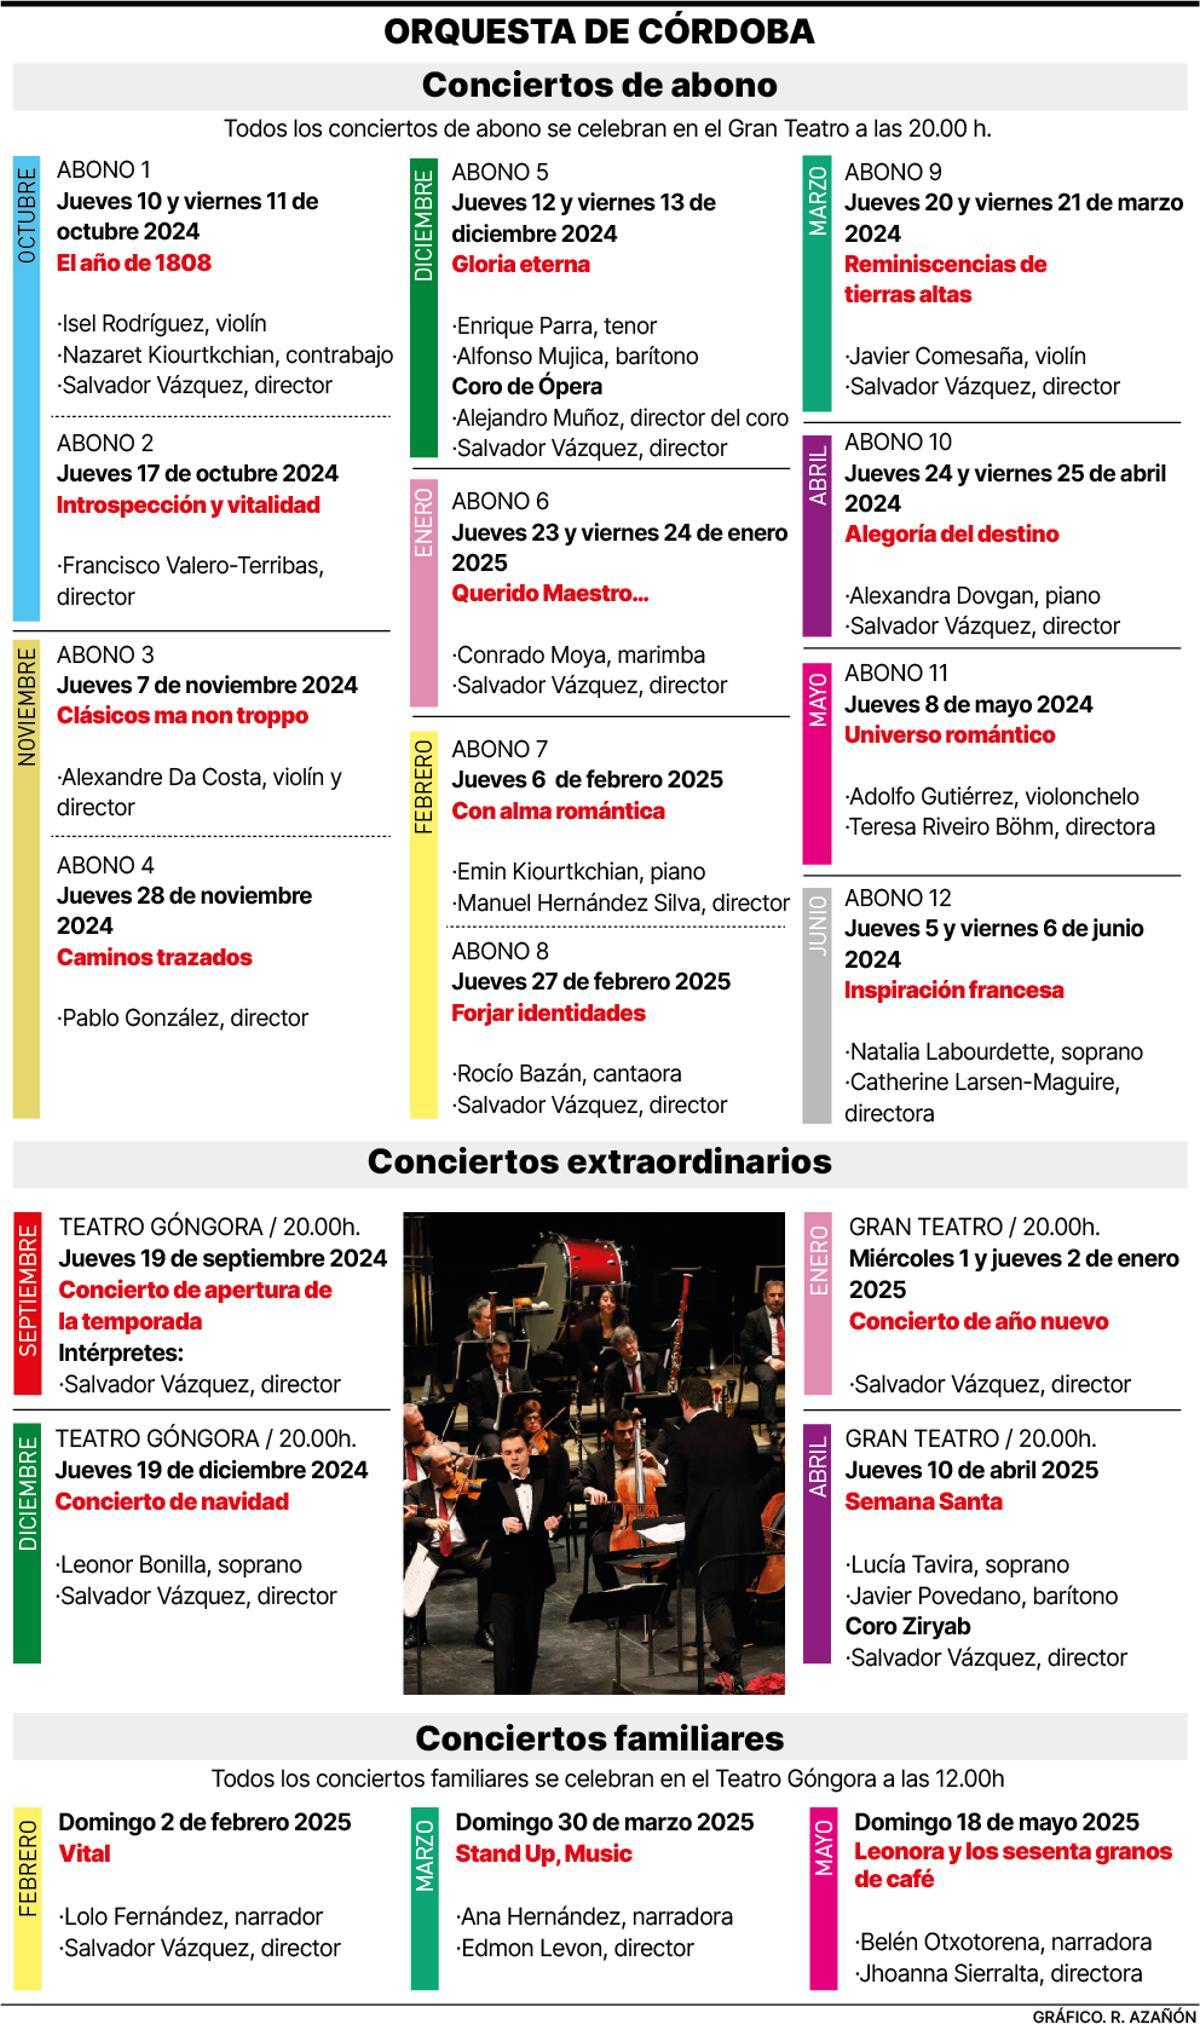 Programación de la Orquesta de Córdoba.